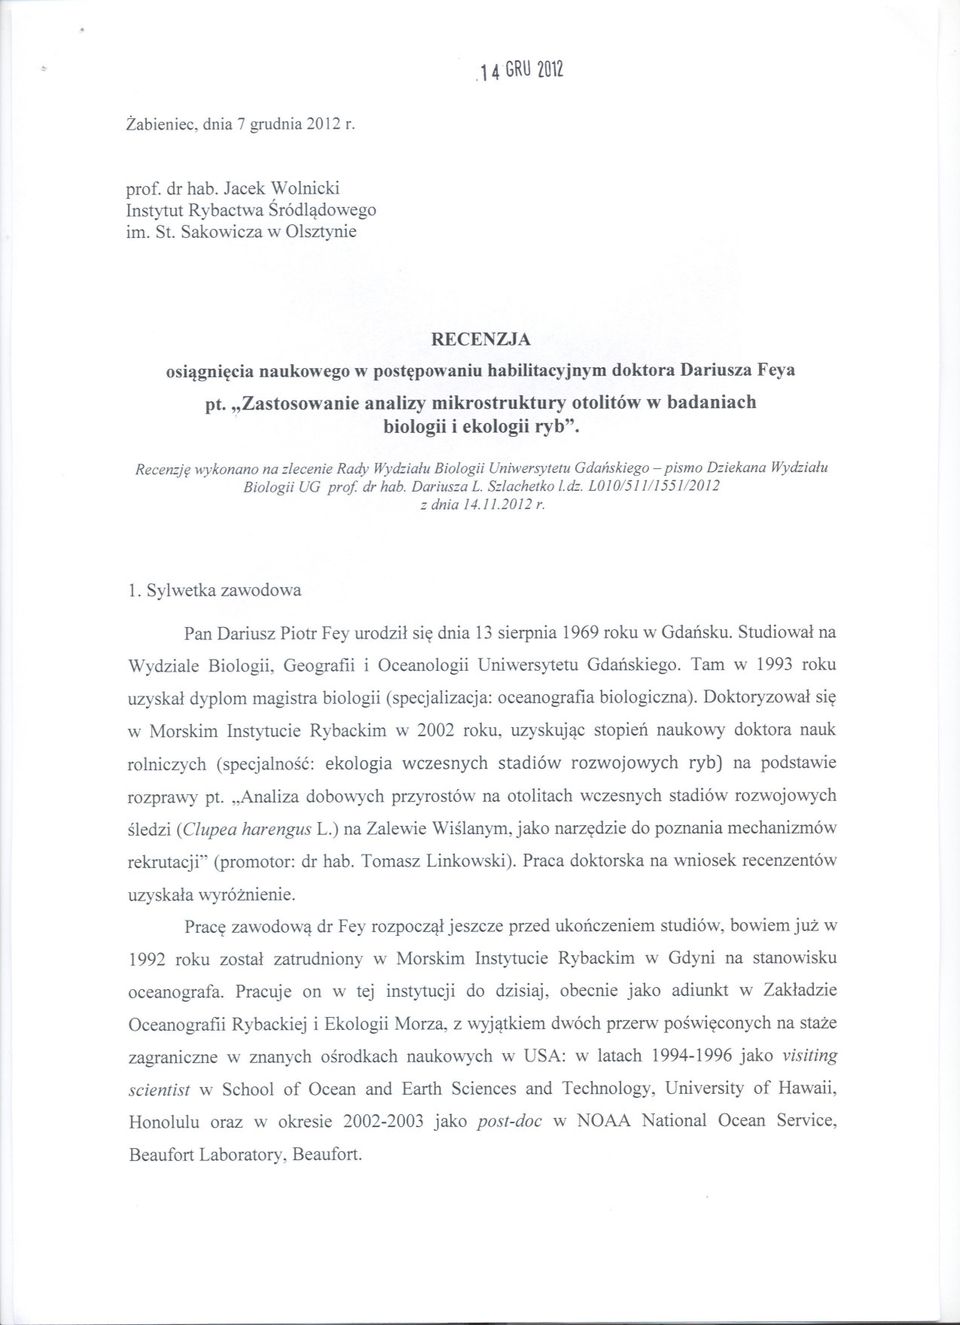 Recenzje wykonano na zlecenie Rady Wydzialu Biologii Uniwersytetu Gdanskiego - pismo Dziekana Wydzialu Biologii UG pro! dr hab. Dariusza L. Szlachetko l. dz. L01O/511/1551/2012 z dnia 14